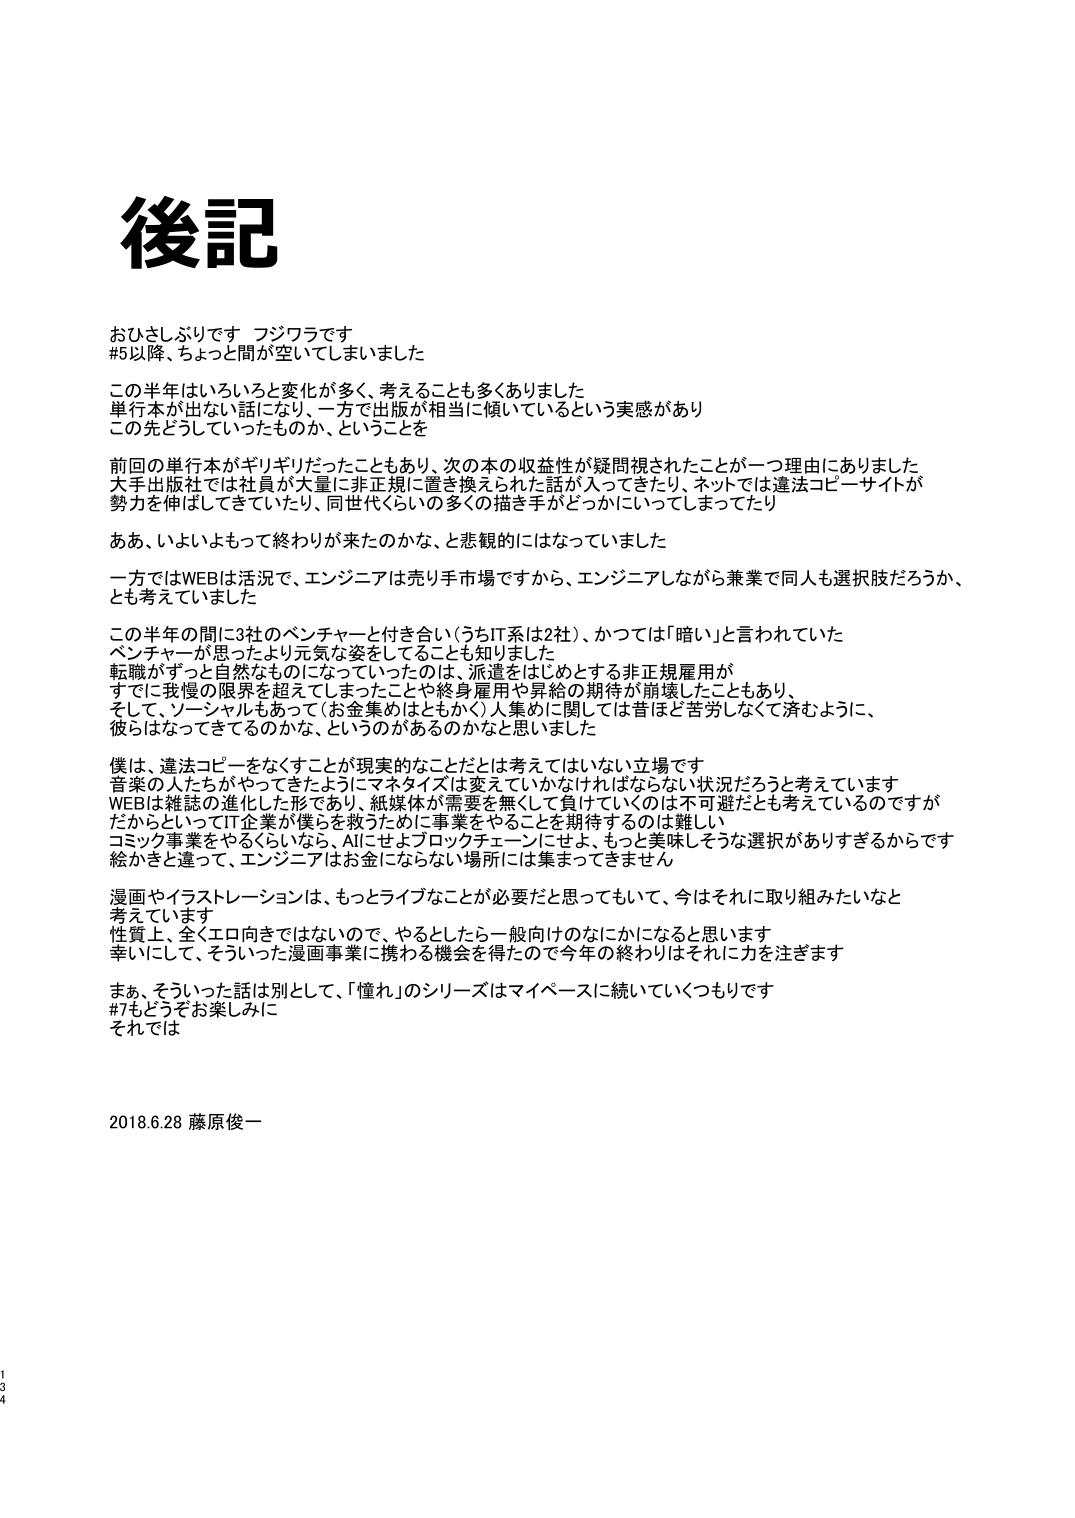 Free Blow Job Akogare no Hito Gakusai Hen #4-6 - Original Verification - Page 265